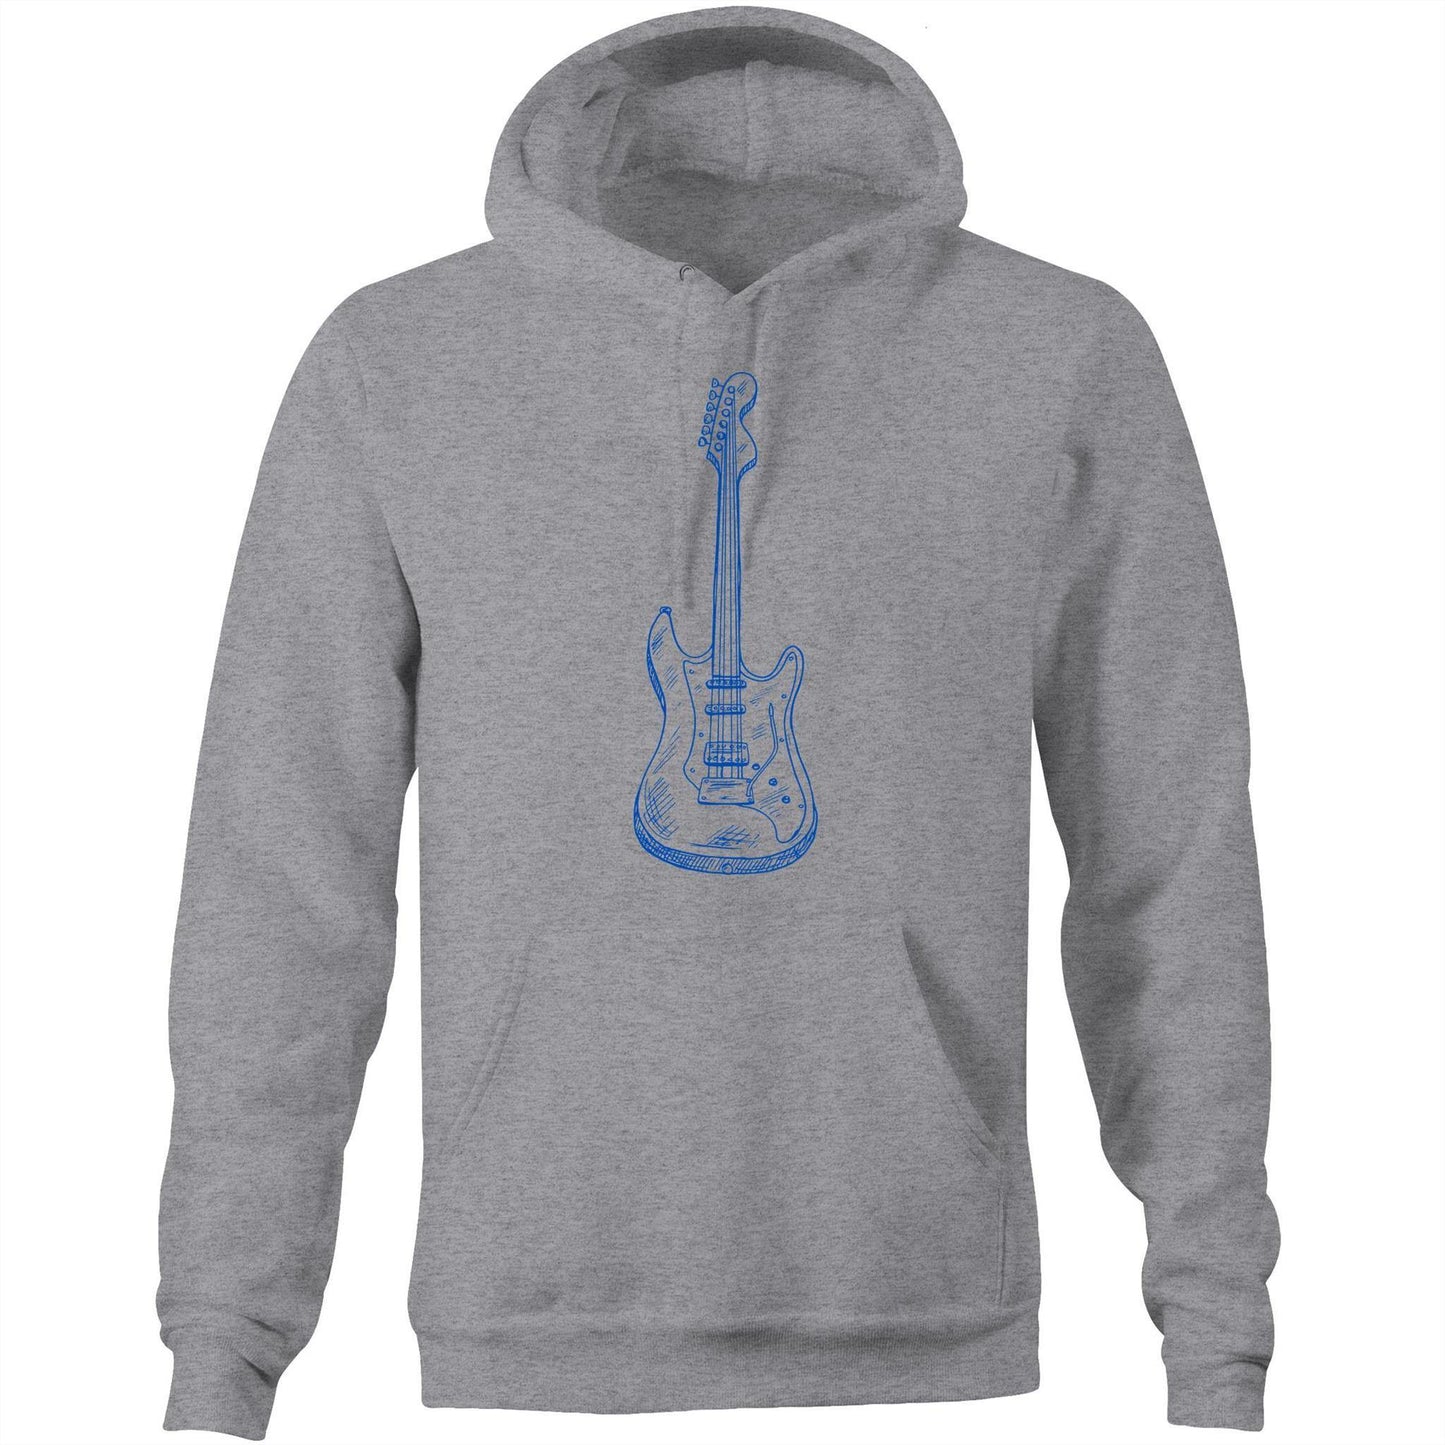 Guitar - Pocket Hoodie Sweatshirt Grey Marle Hoodie Mens Music Womens